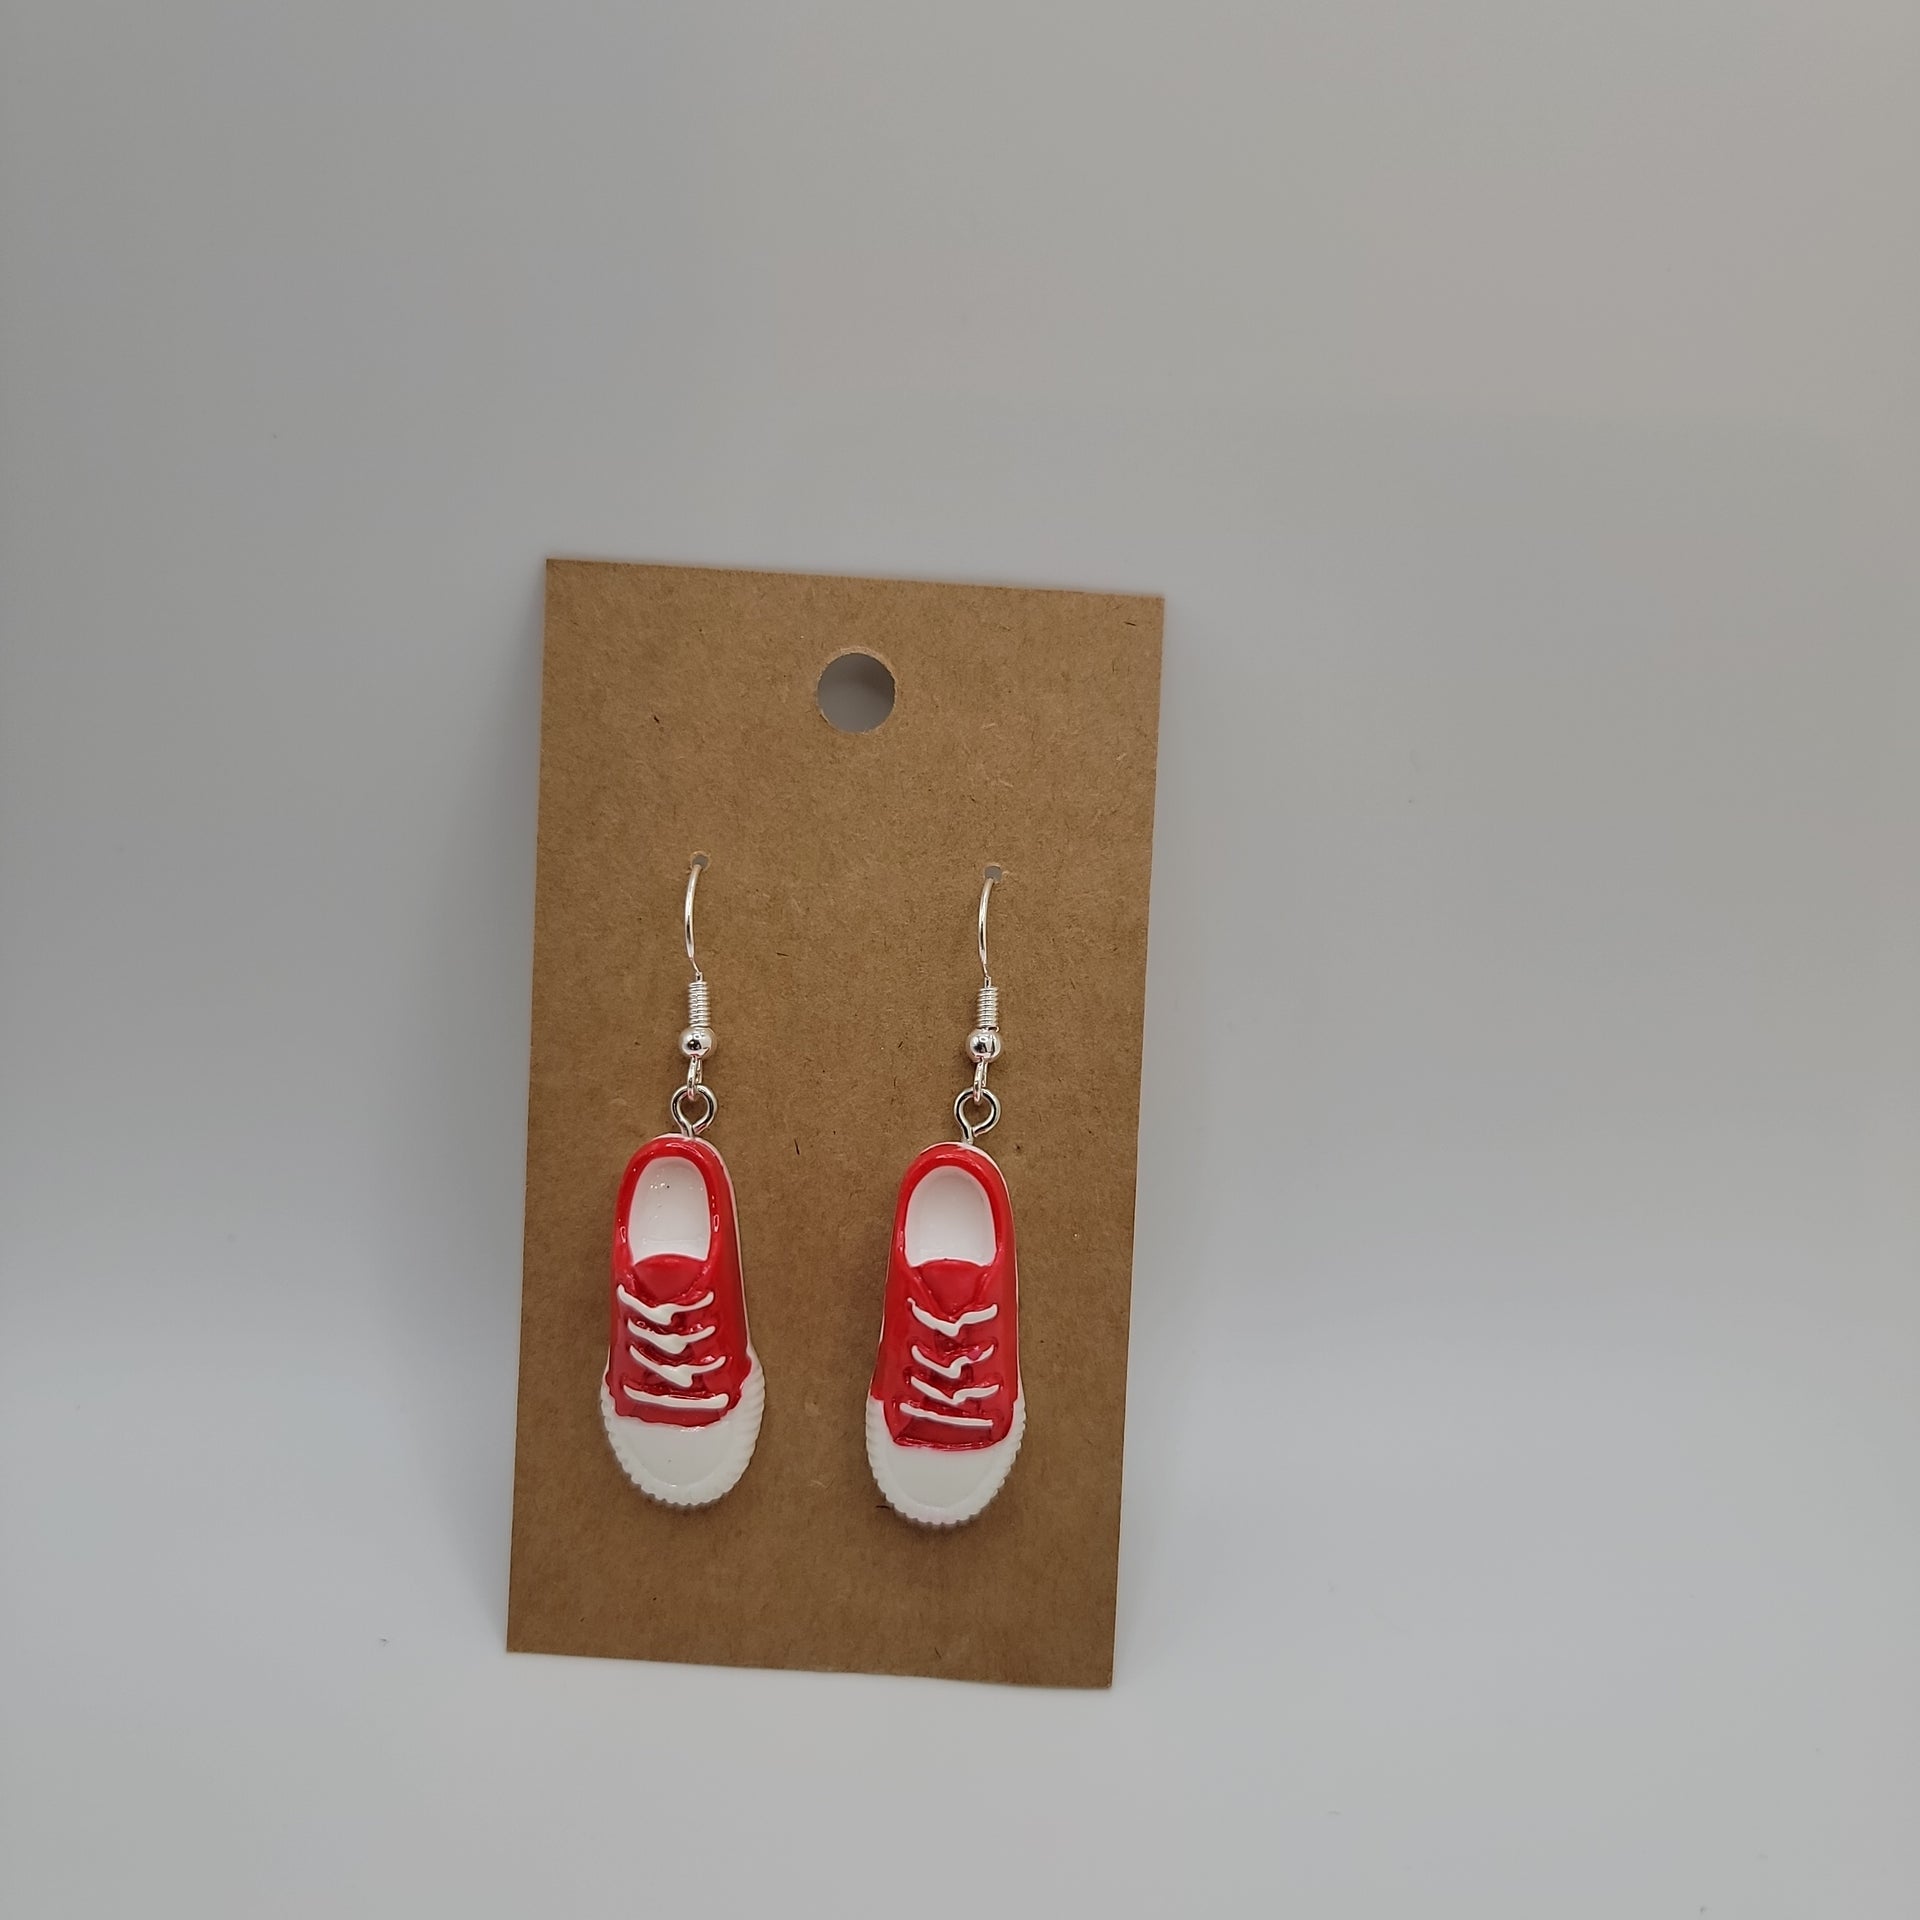 Red shoe earrings